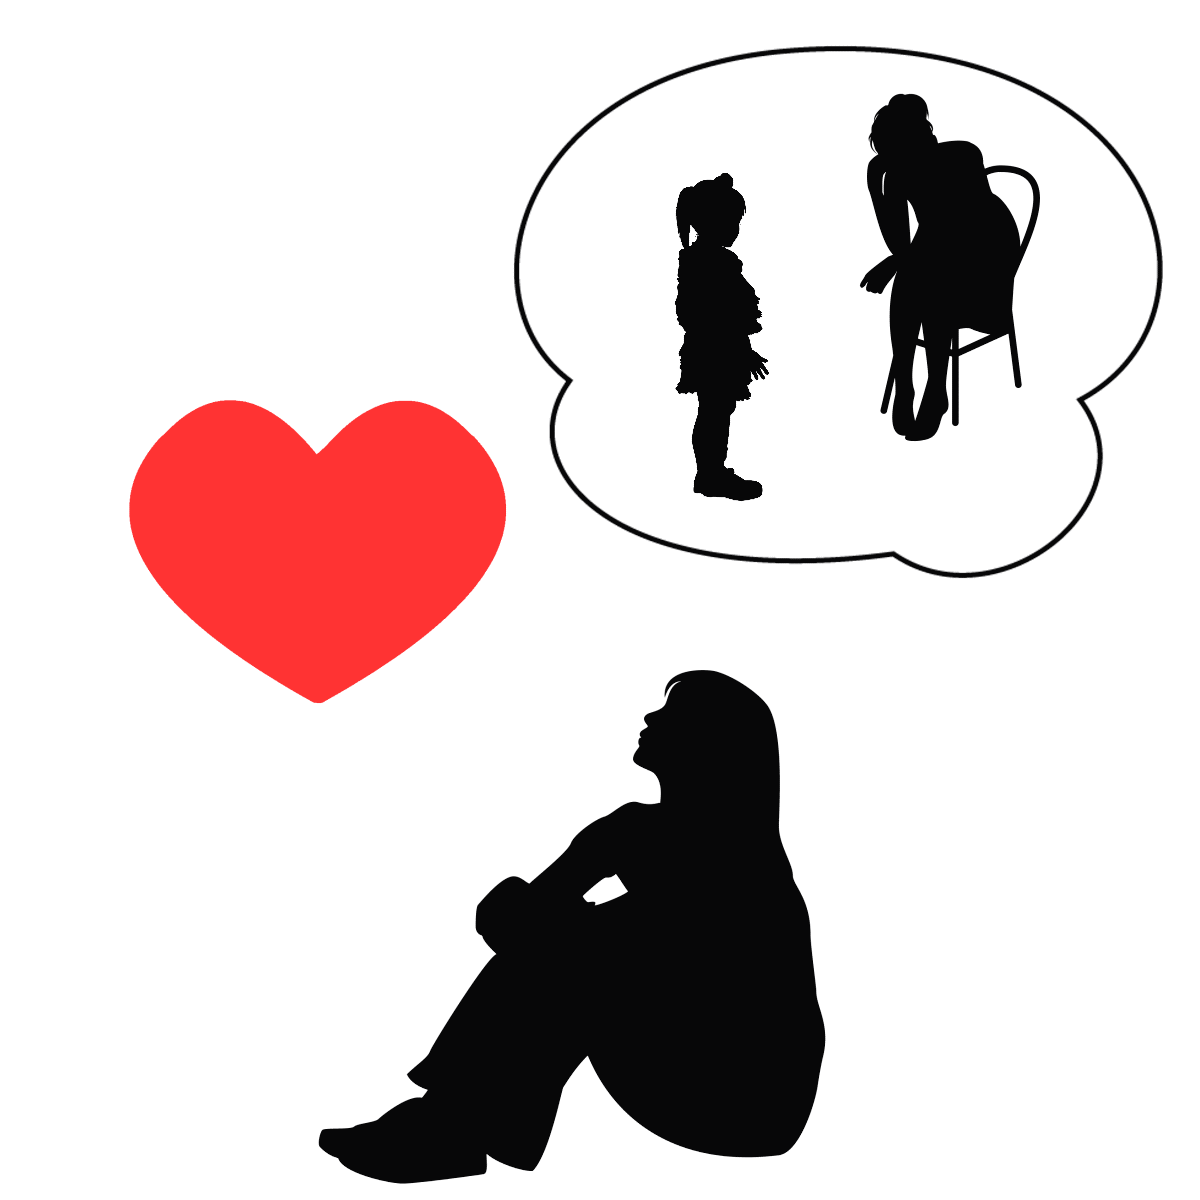 アダルトチルドレン_イネイブラータイプの恋愛は恋人の支え役になりやすい様子を表すイラスト